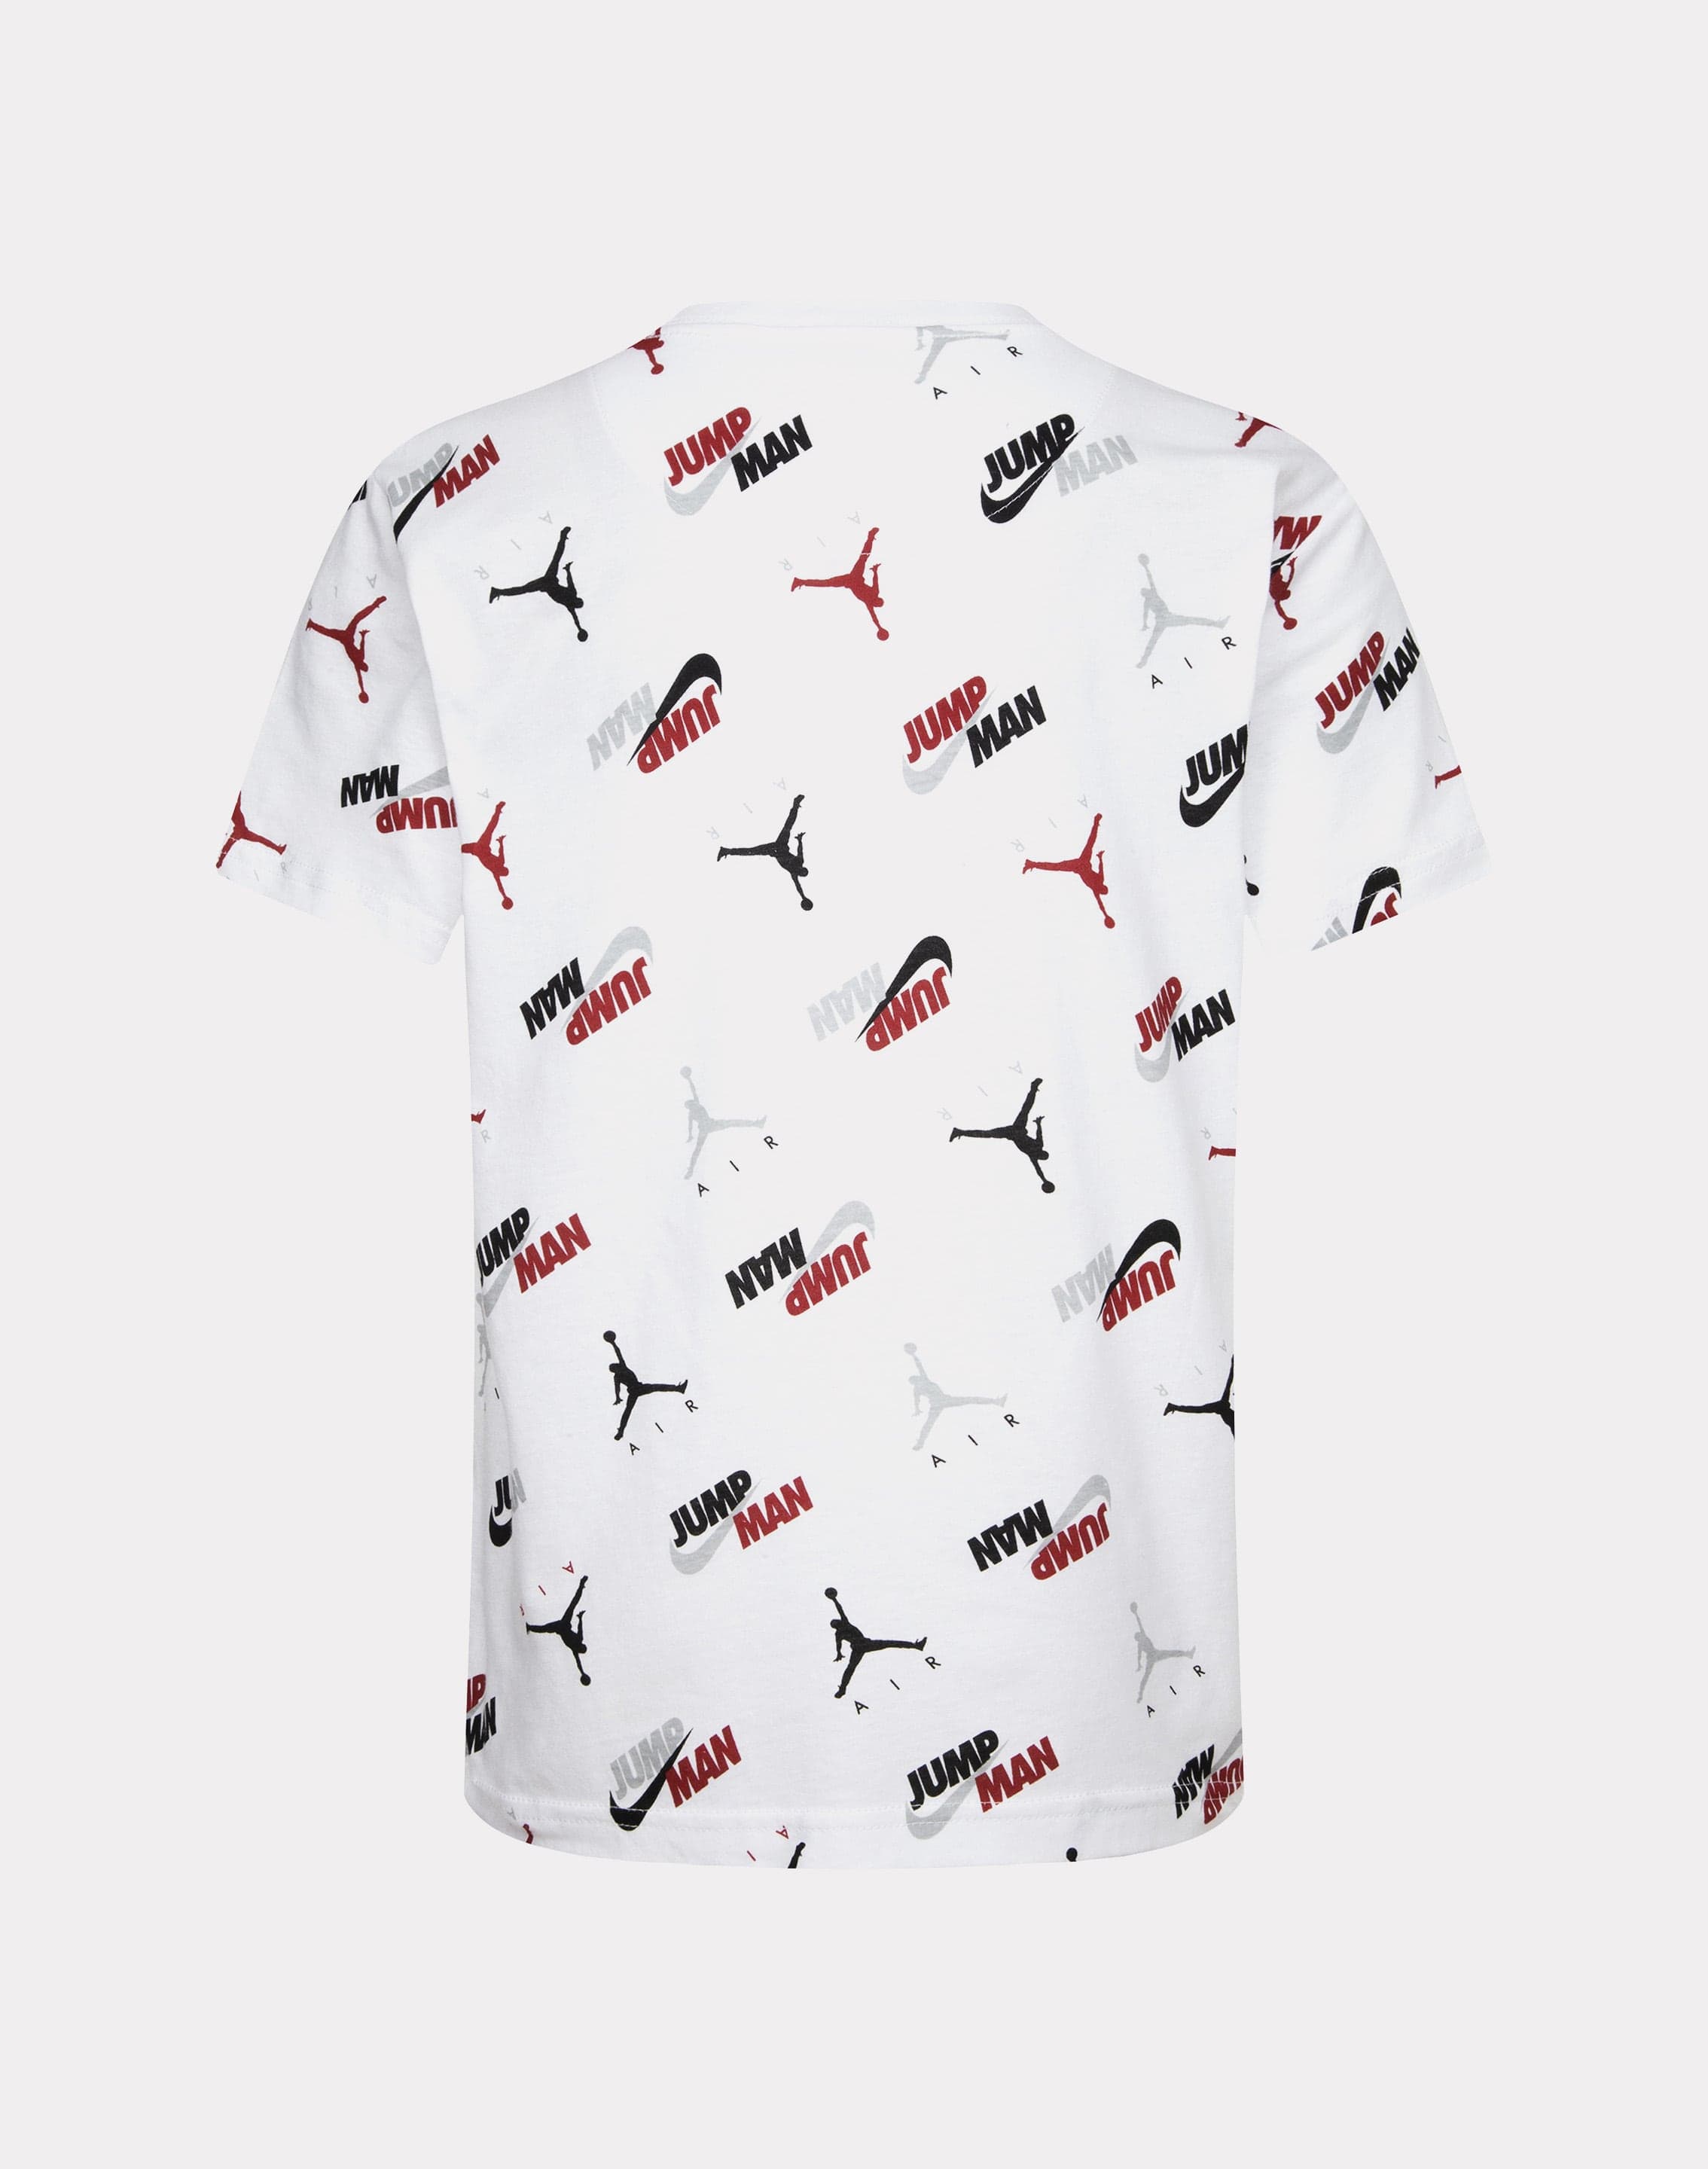 Jordan Junior Boys' Speckled Allover Print T-shirt / White